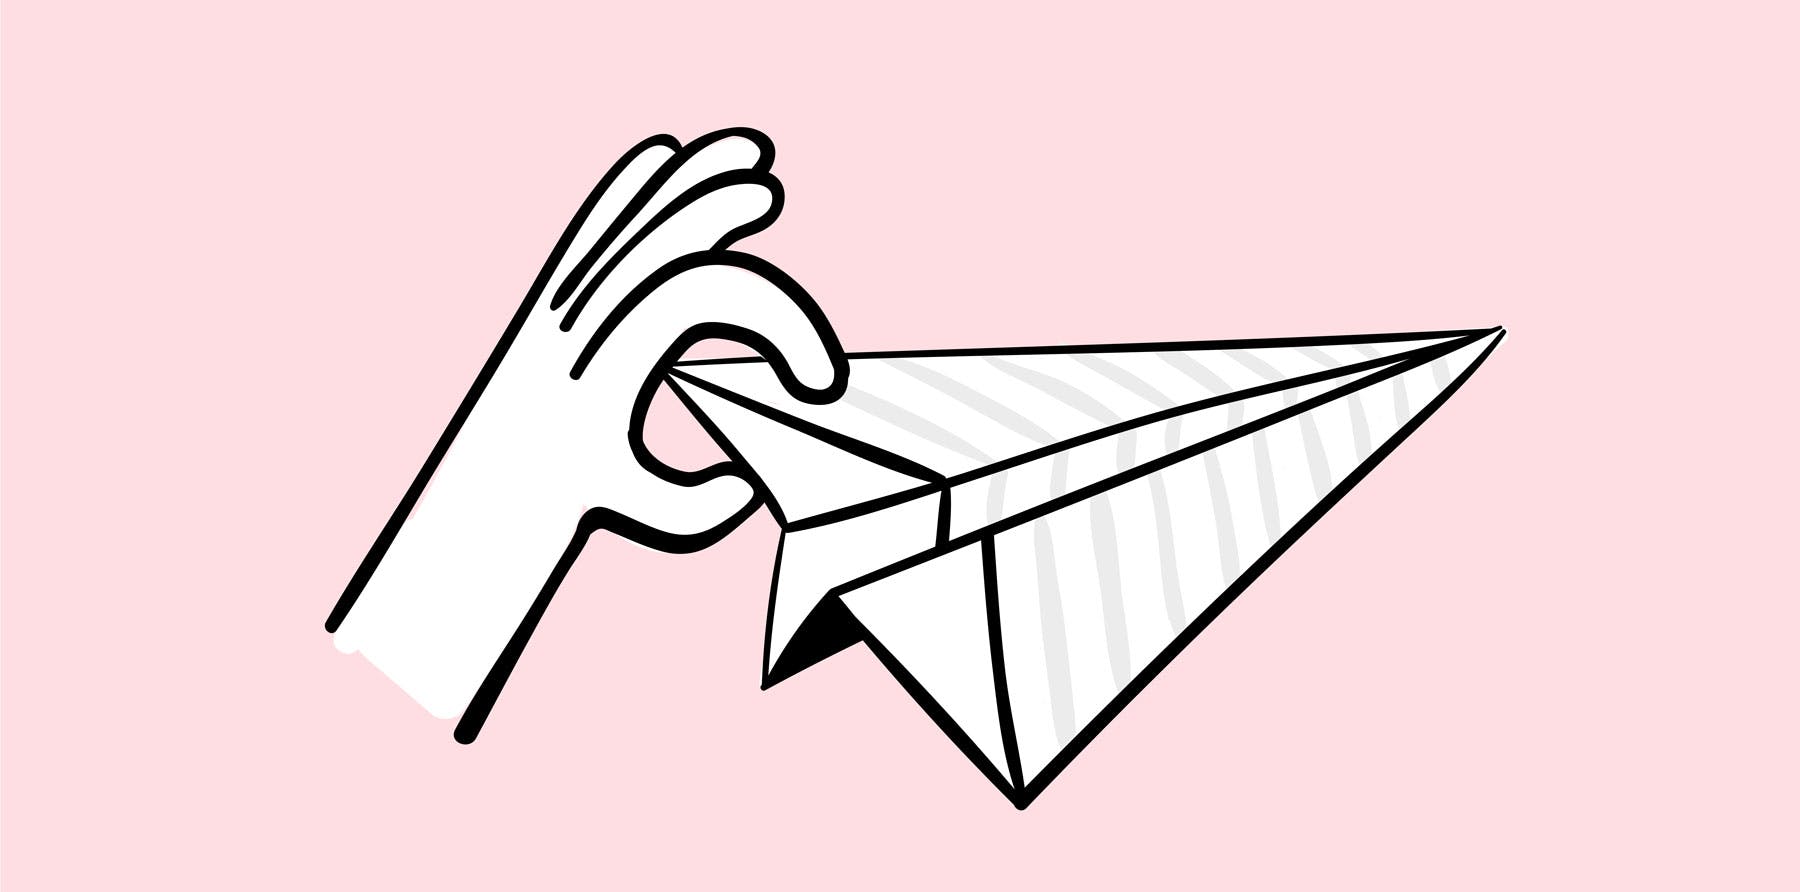 Una mano a punto de lanzar un avión de papel.